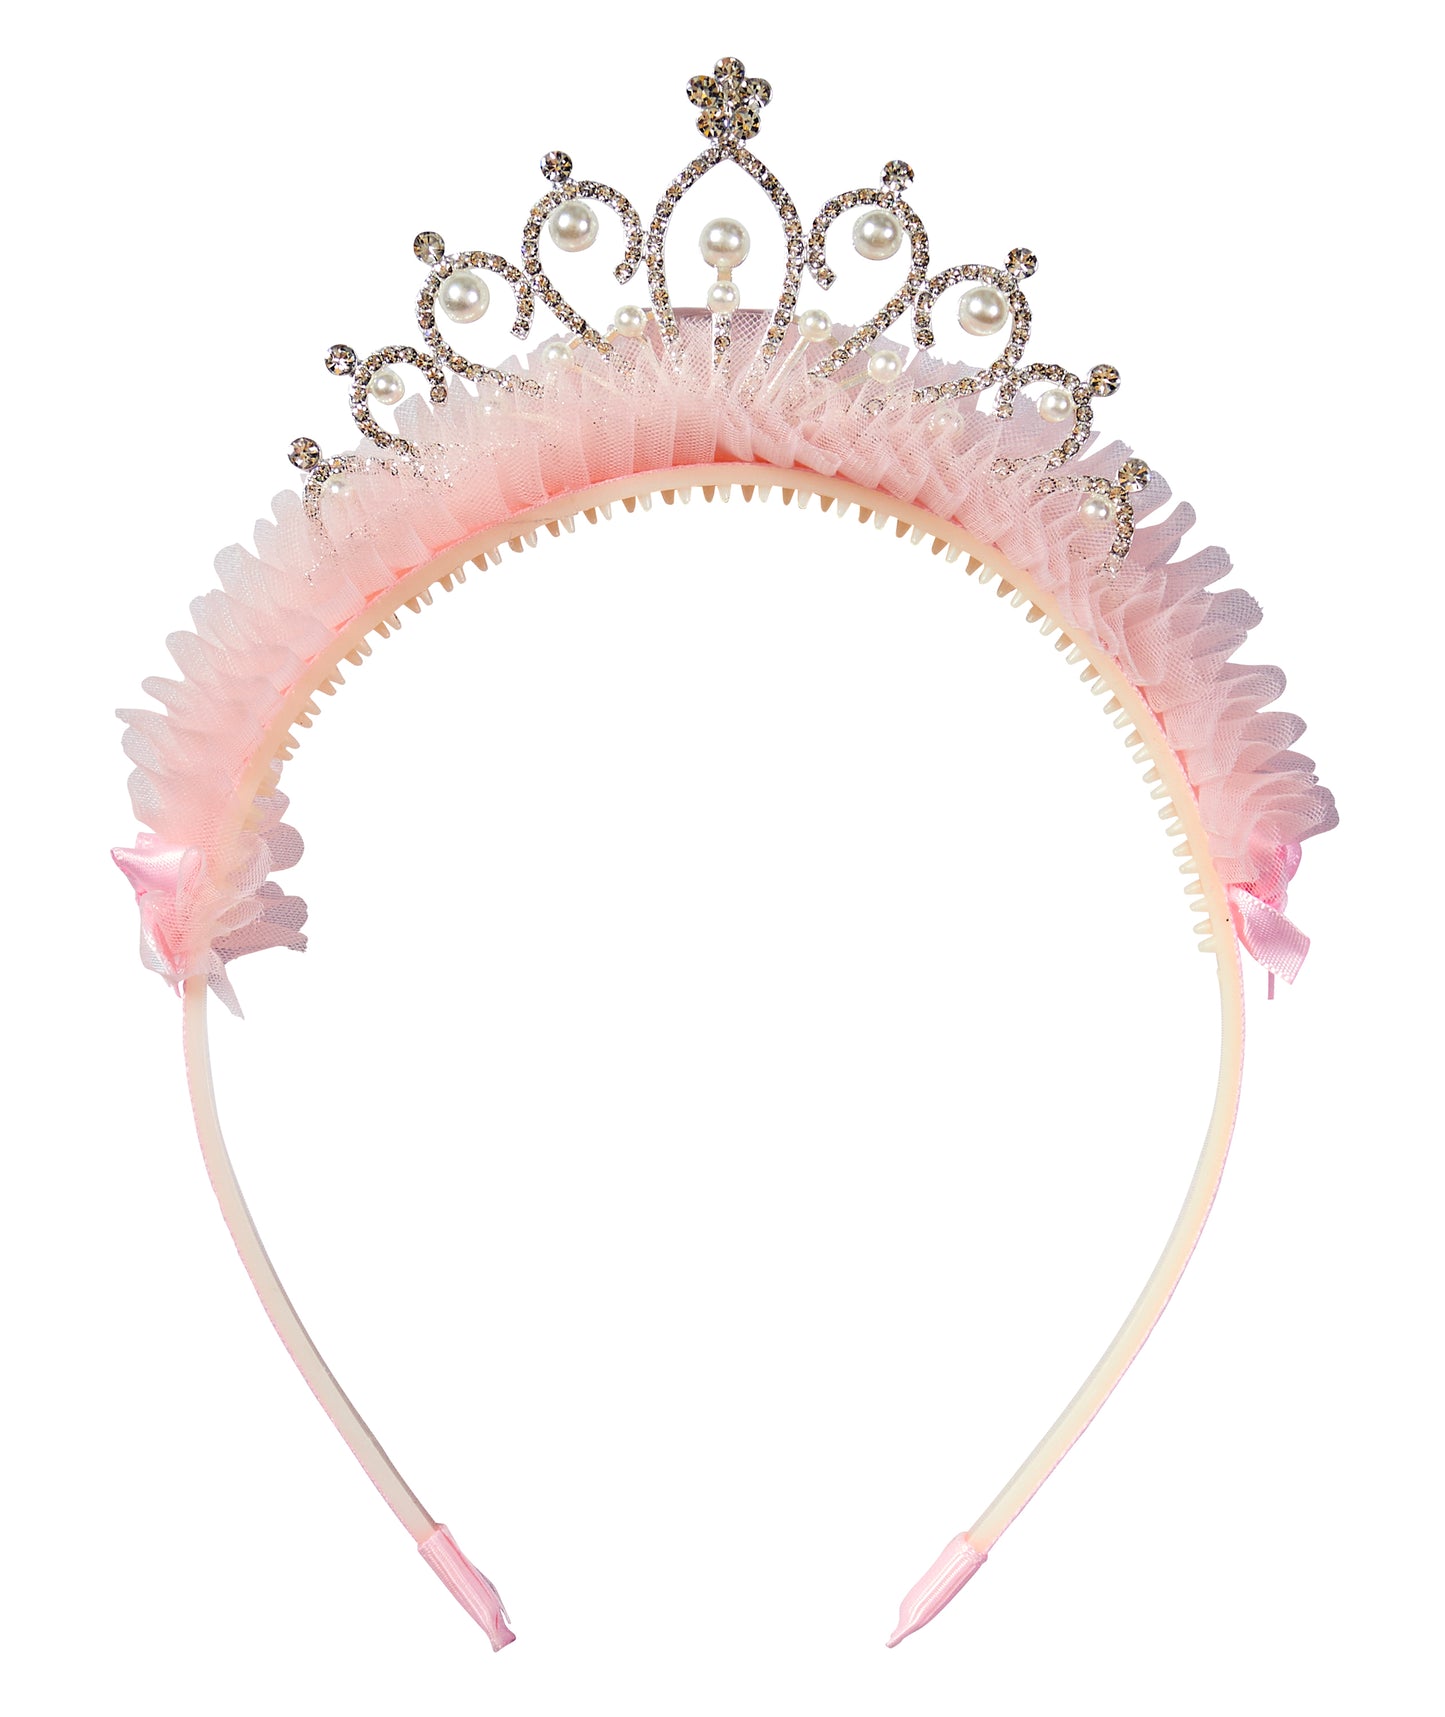 誕生日 お祝い 女子会 装飾 王冠 フェミニンティアラカチューシャ フリーサイズ ピンク【クリアストーン】